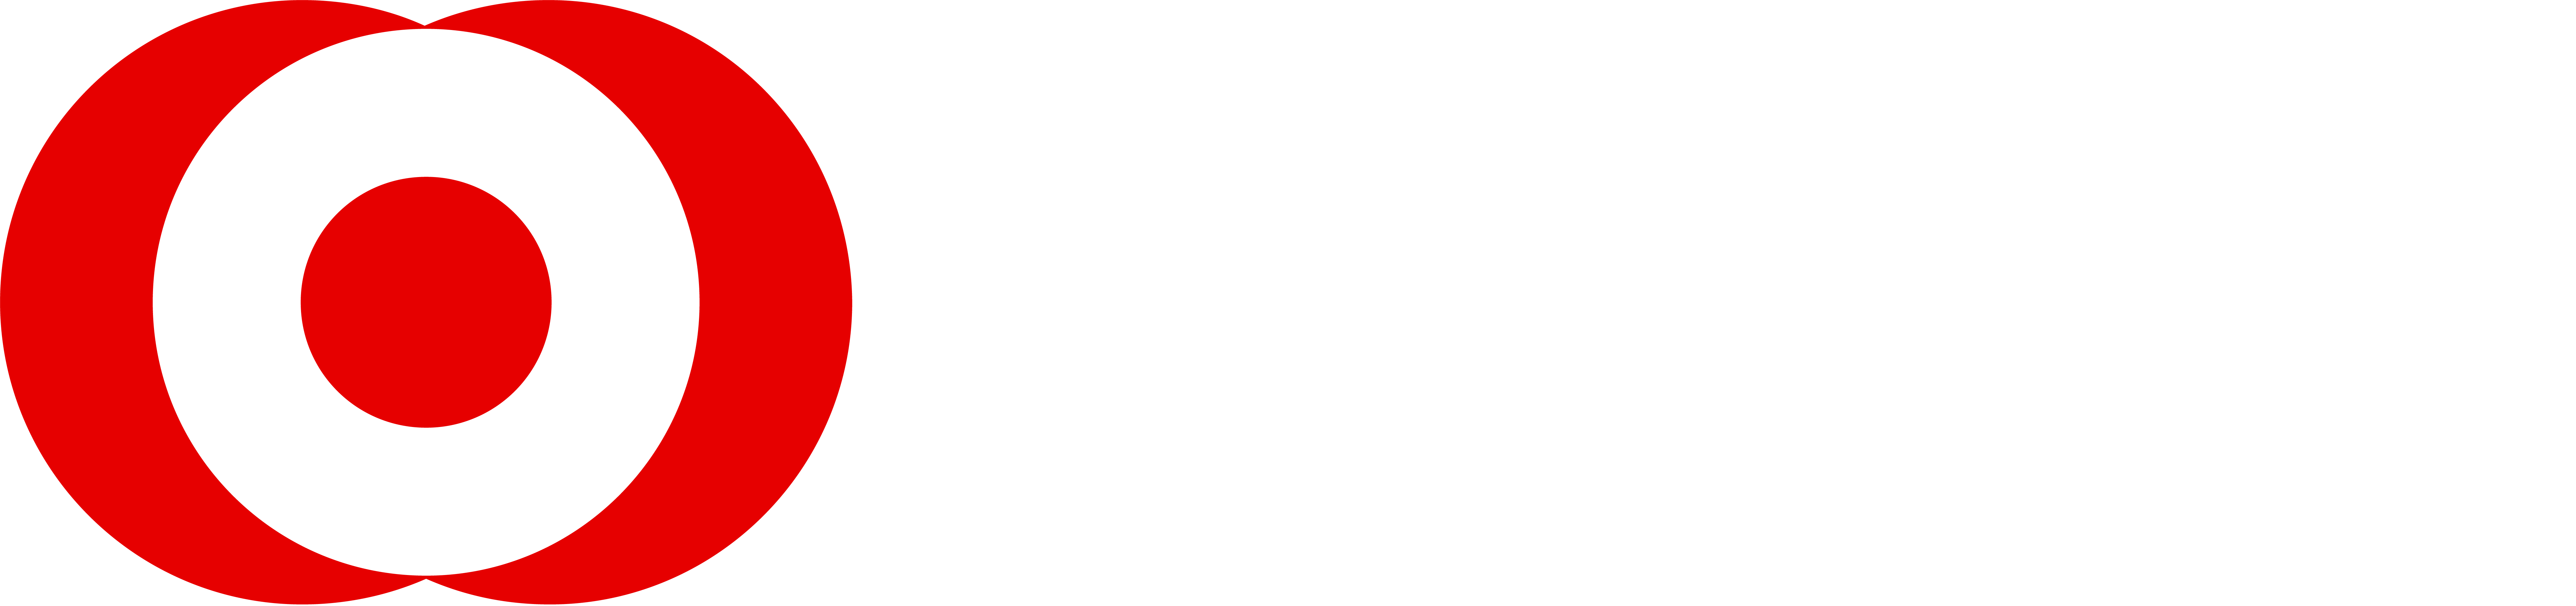 Mufg 2 Logo